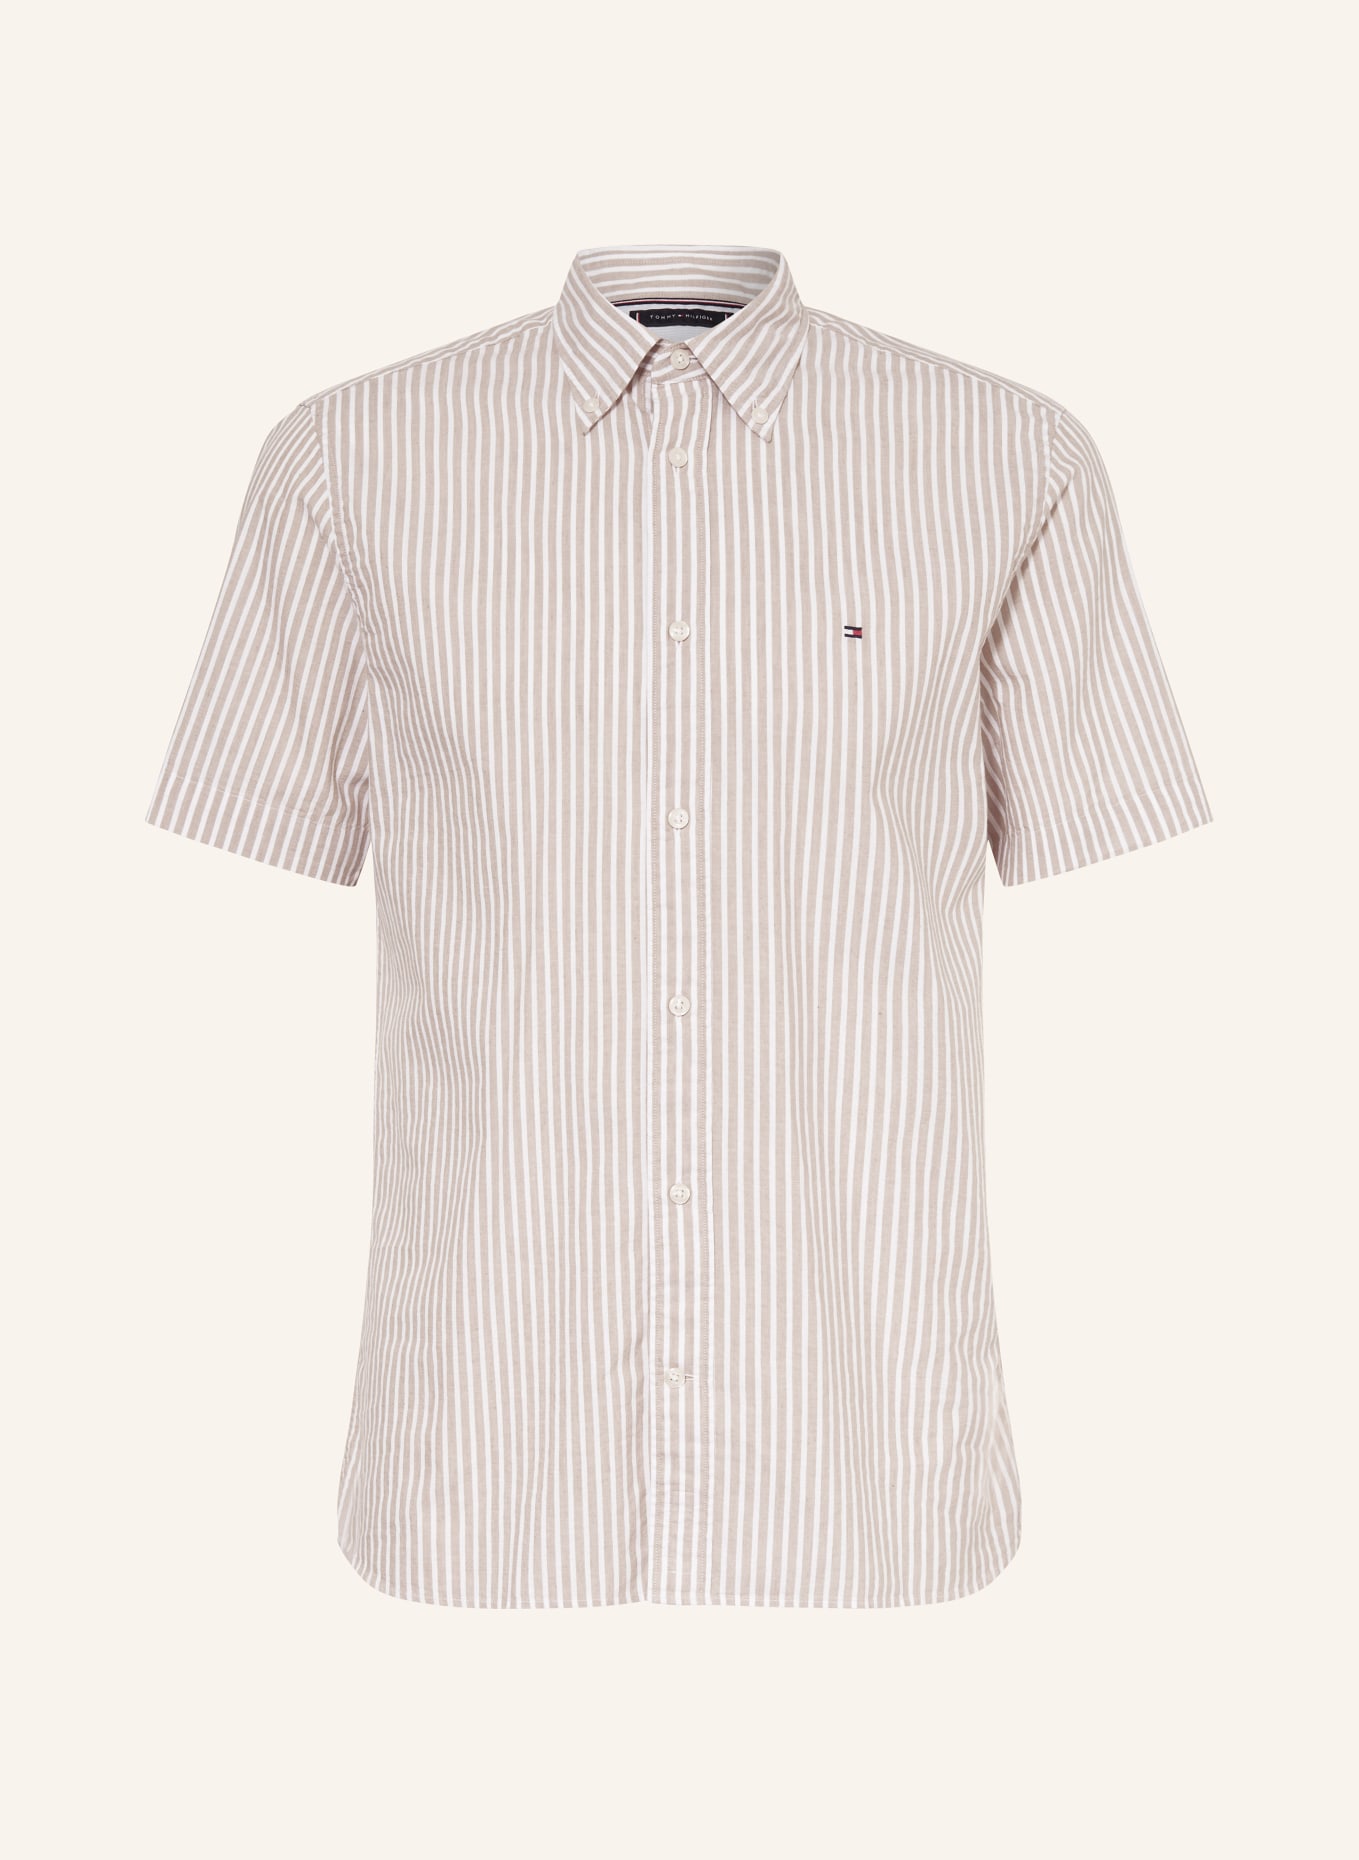 TOMMY HILFIGER Short sleeve shirt regular fit, Color: BEIGE/ WHITE (Image 1)